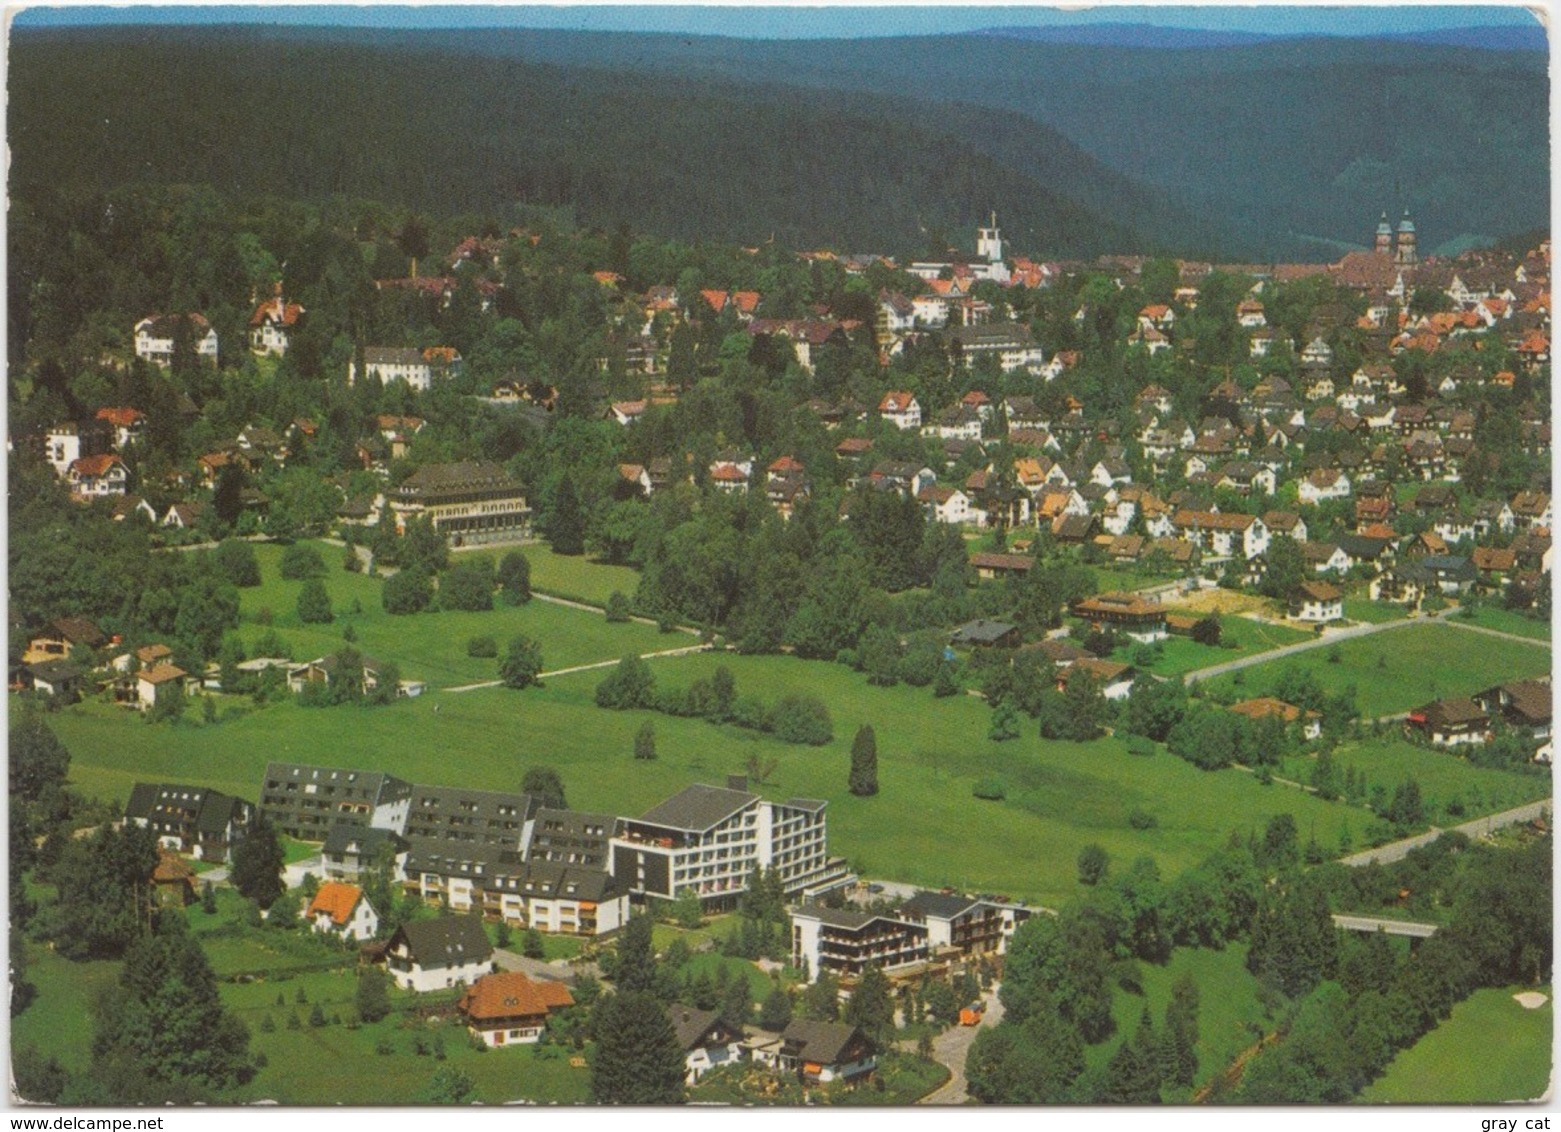 Freudenstadt Im Schwarzwald, Heilklimatischer Kurort, Kurgebiet, Unused Postcard [21399] - Freudenstadt